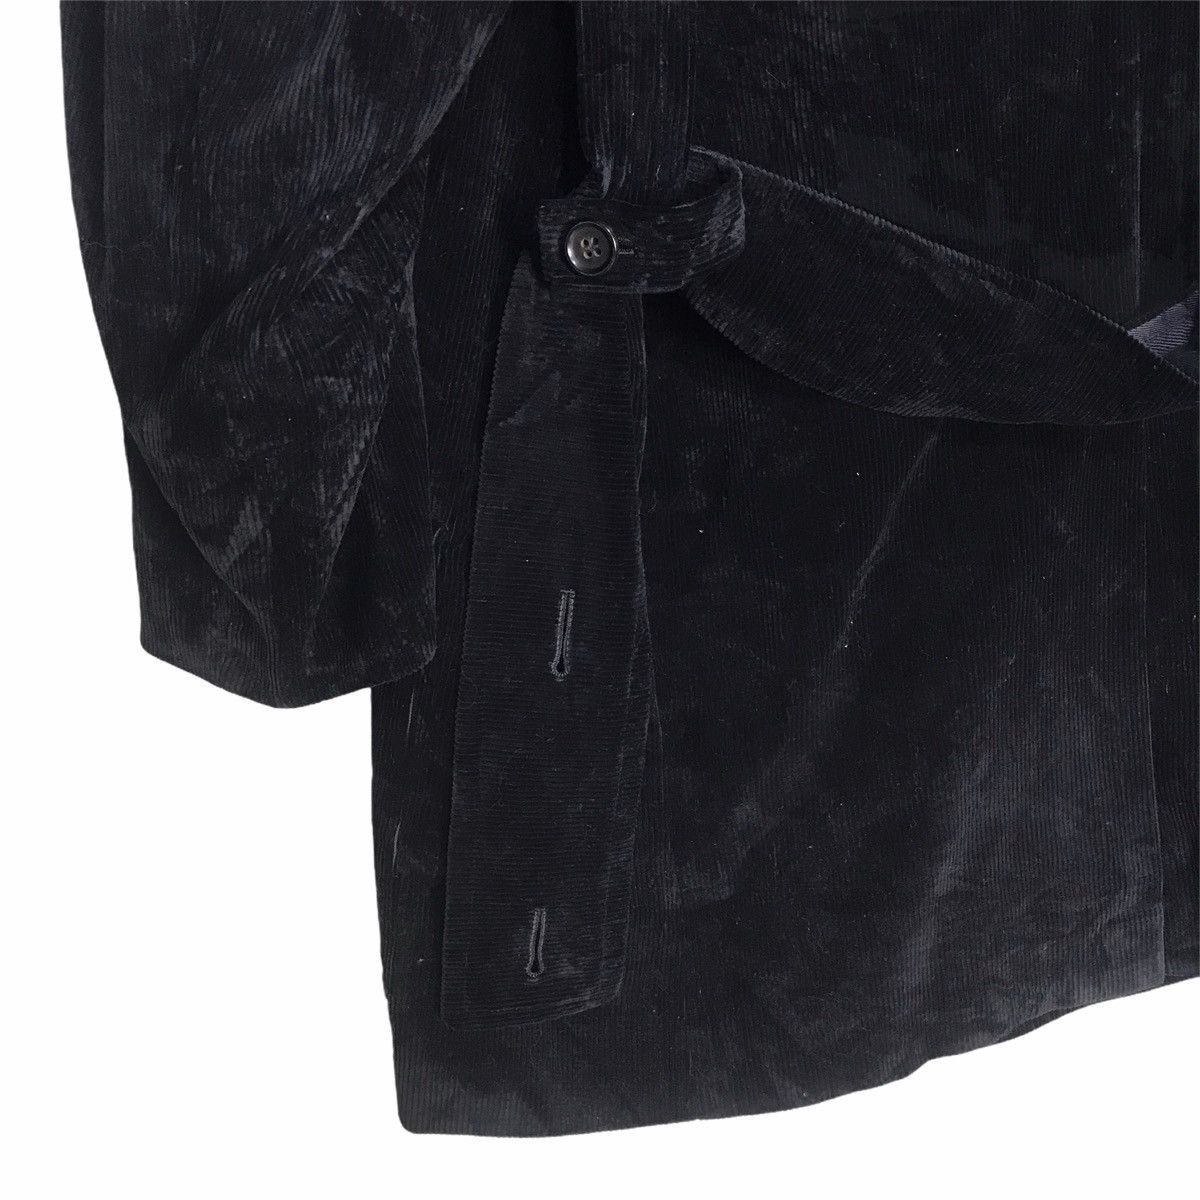 Yohji Yamamoto pour homme oversize black curdoroy coat - 5